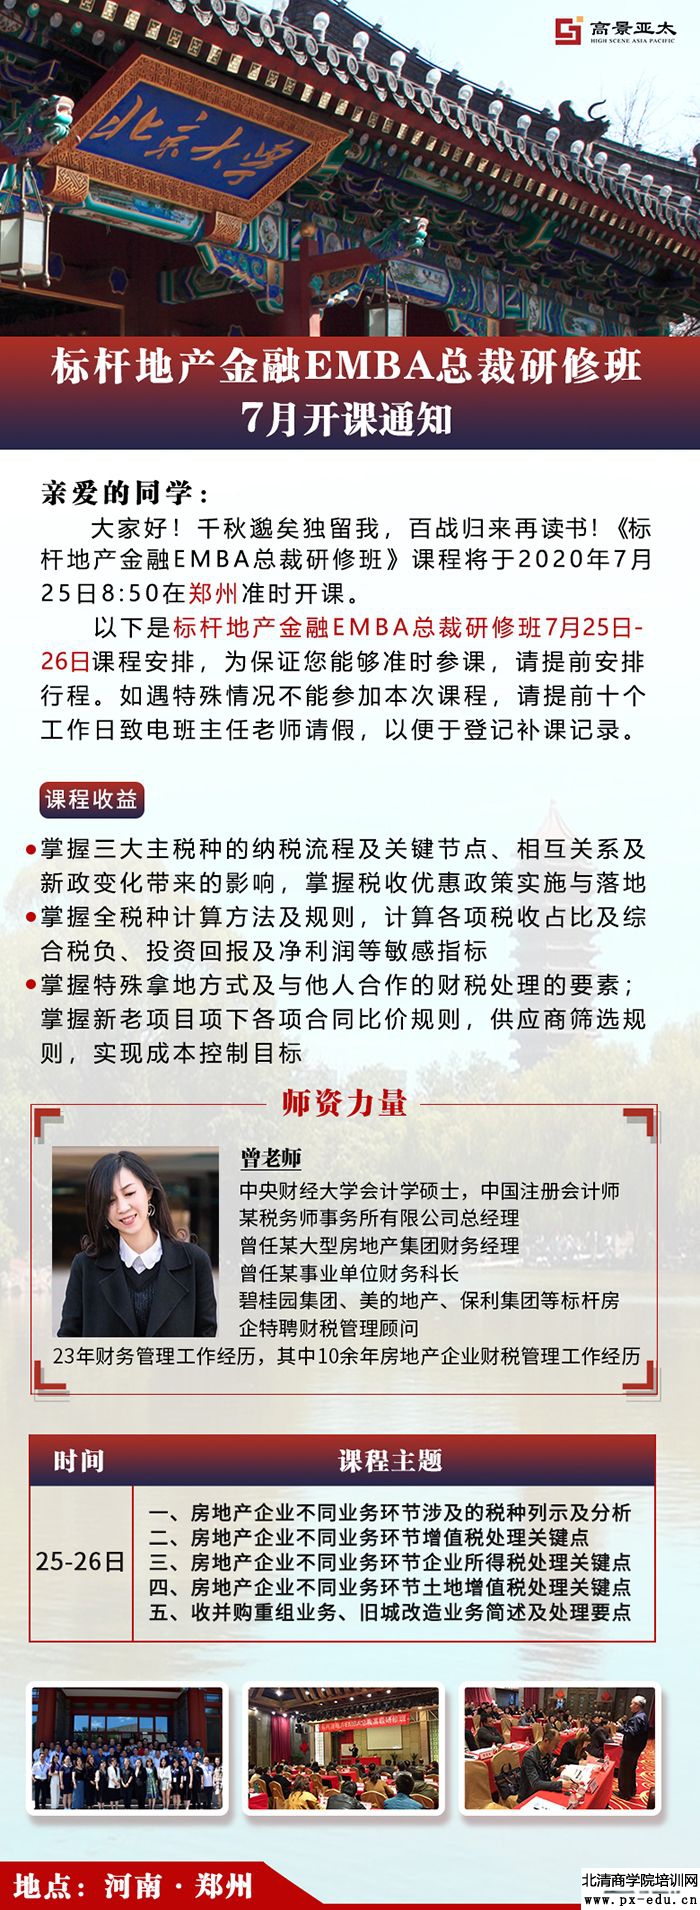 7月25-26日标杆地产EMBA总裁研修班郑州开课